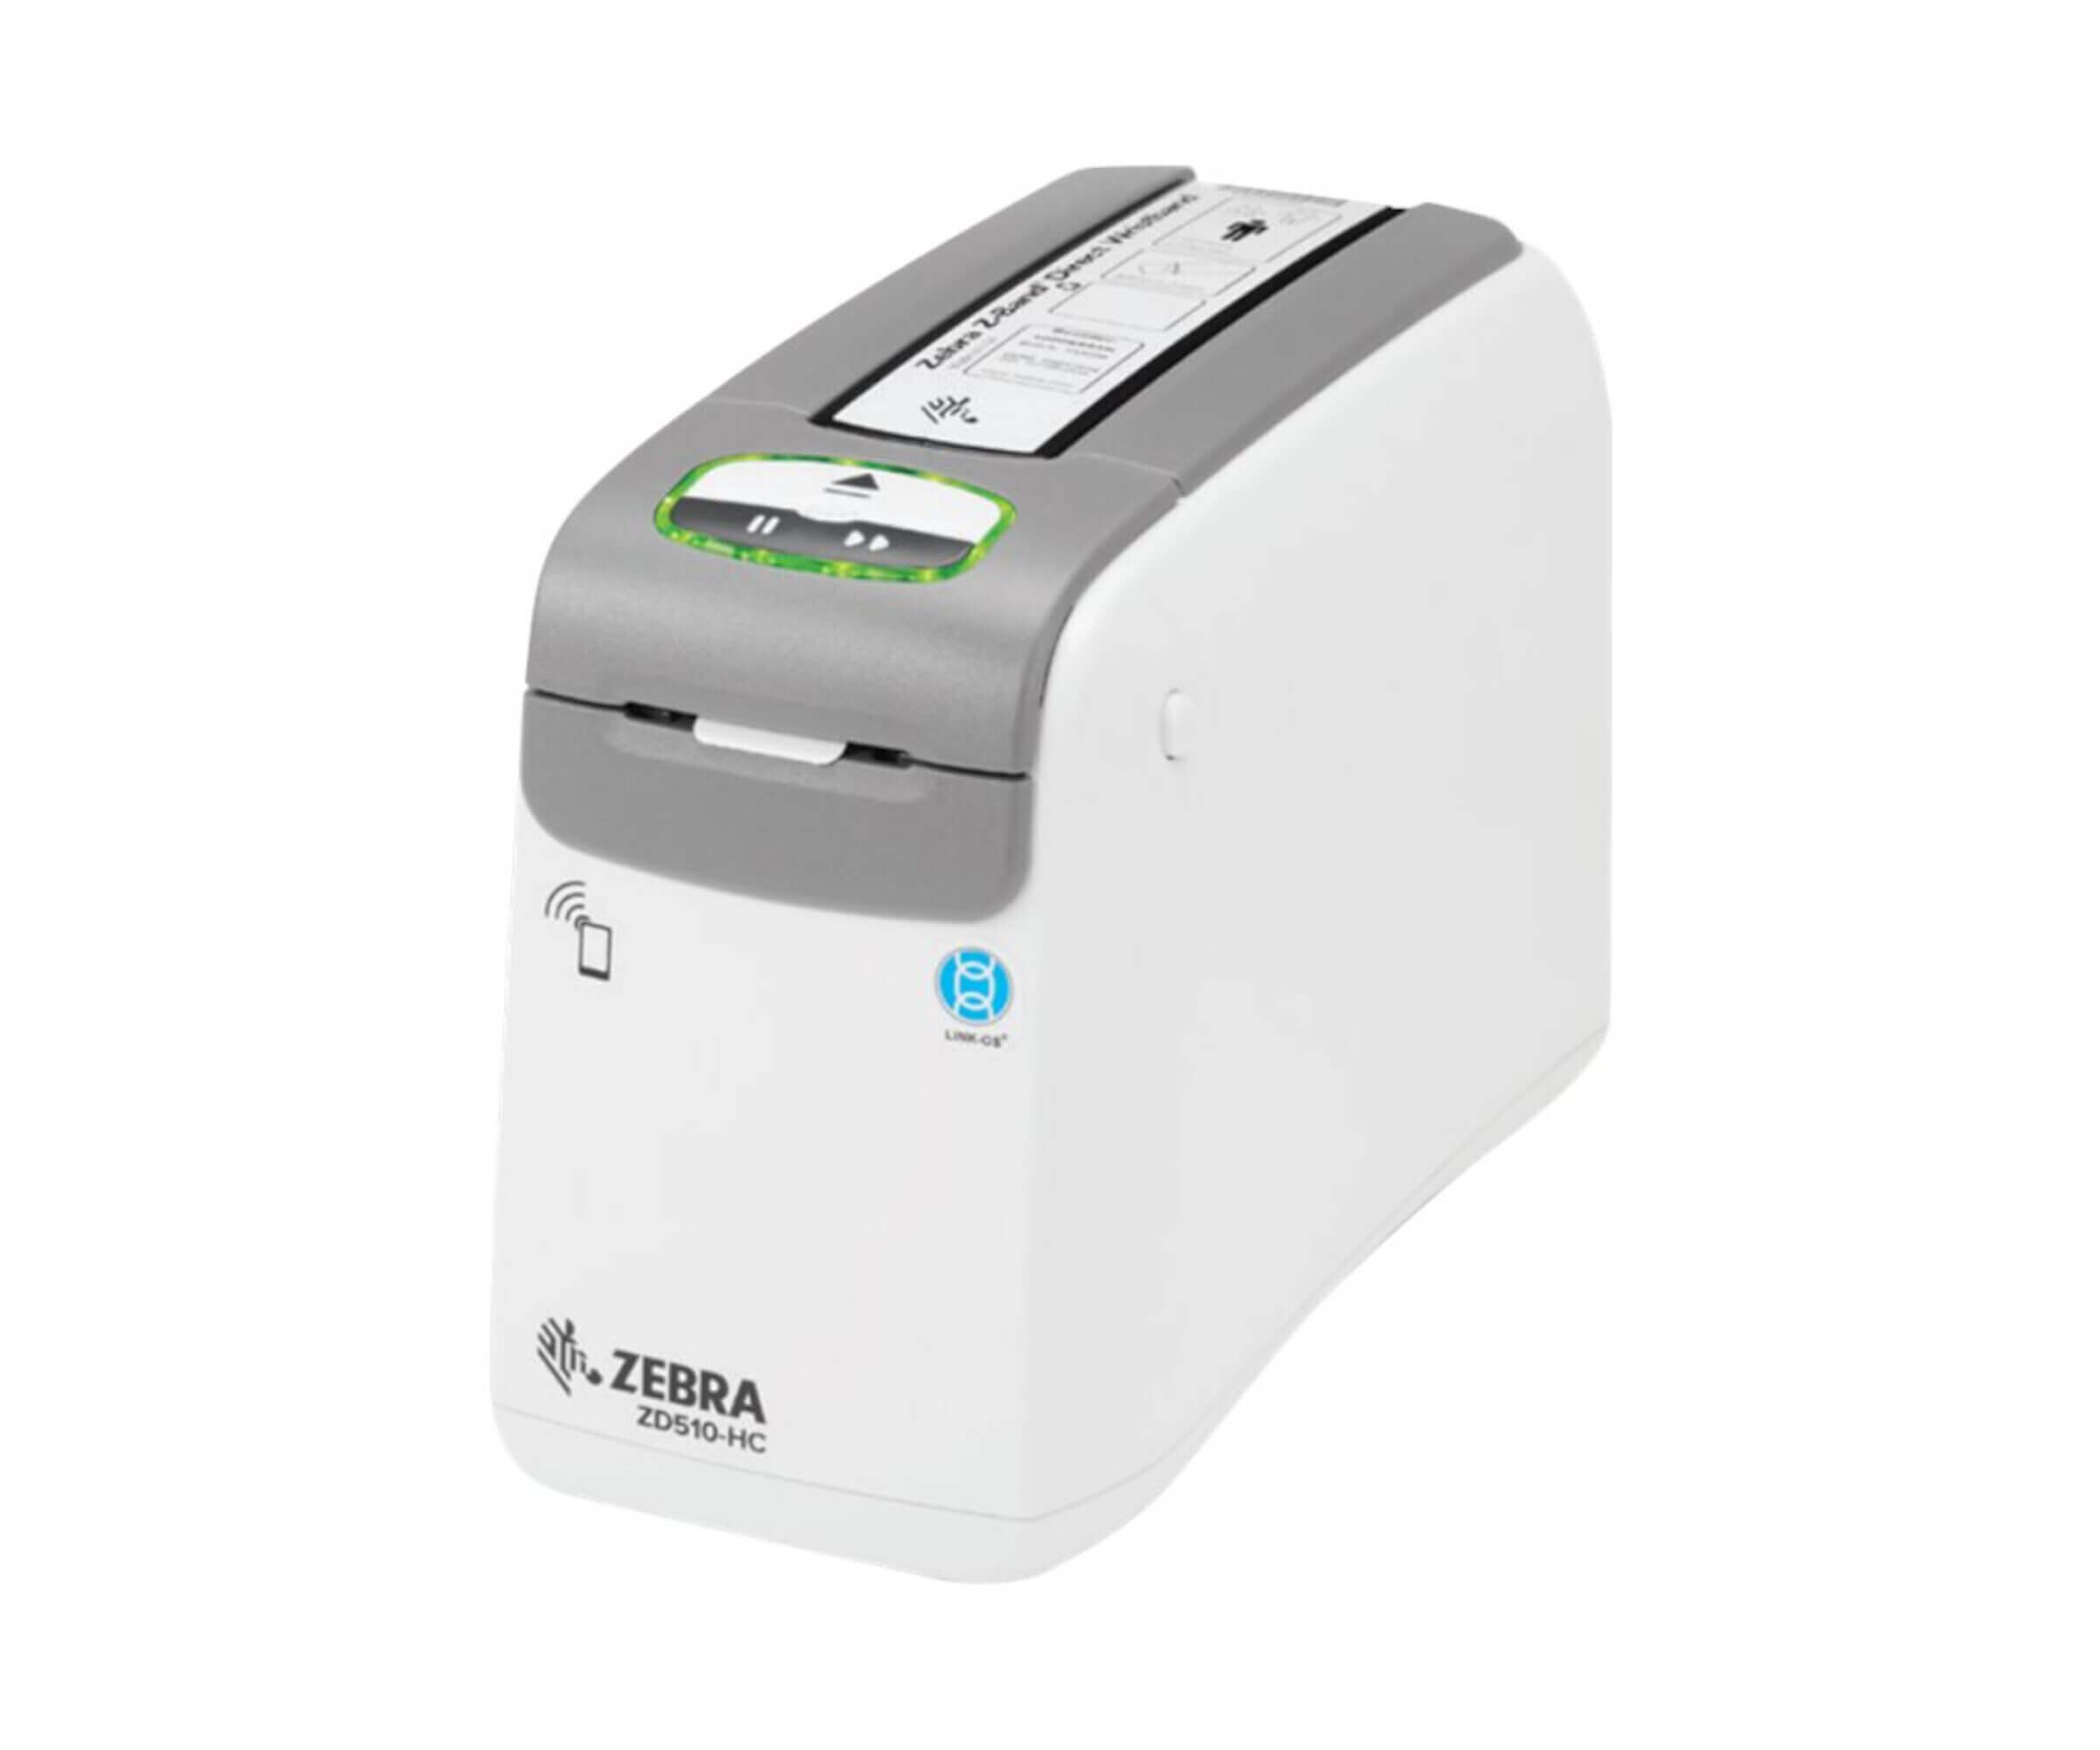 Zebra Zd510 Hc Label Printer Thermal Fashion Roll 302 Cm 88490 4775